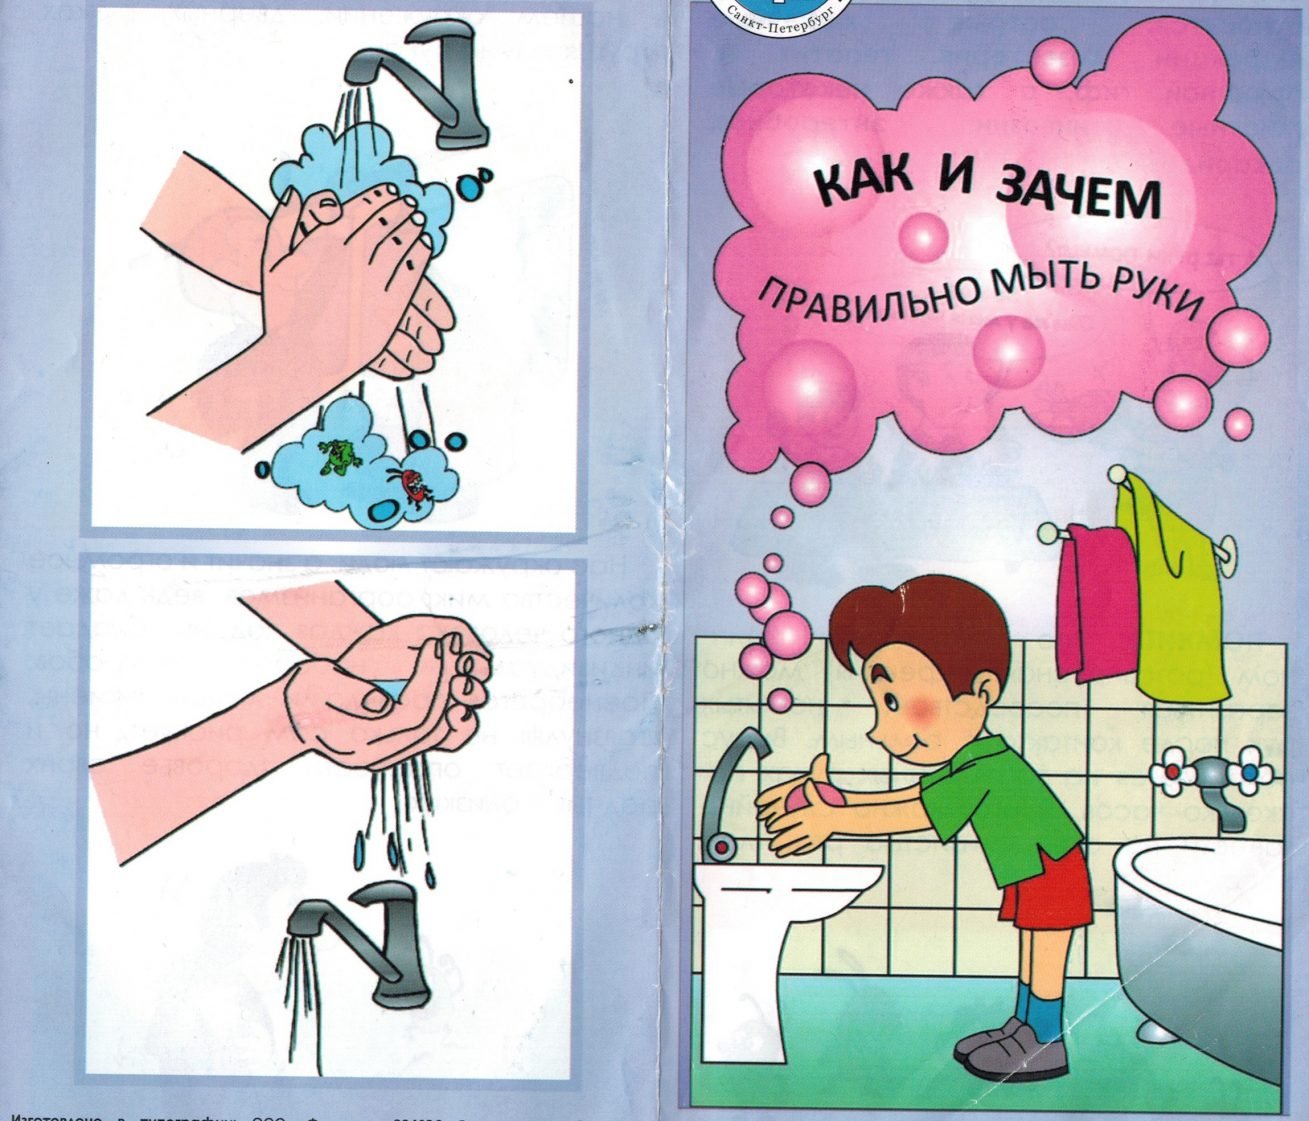 Как правильно мыть руки